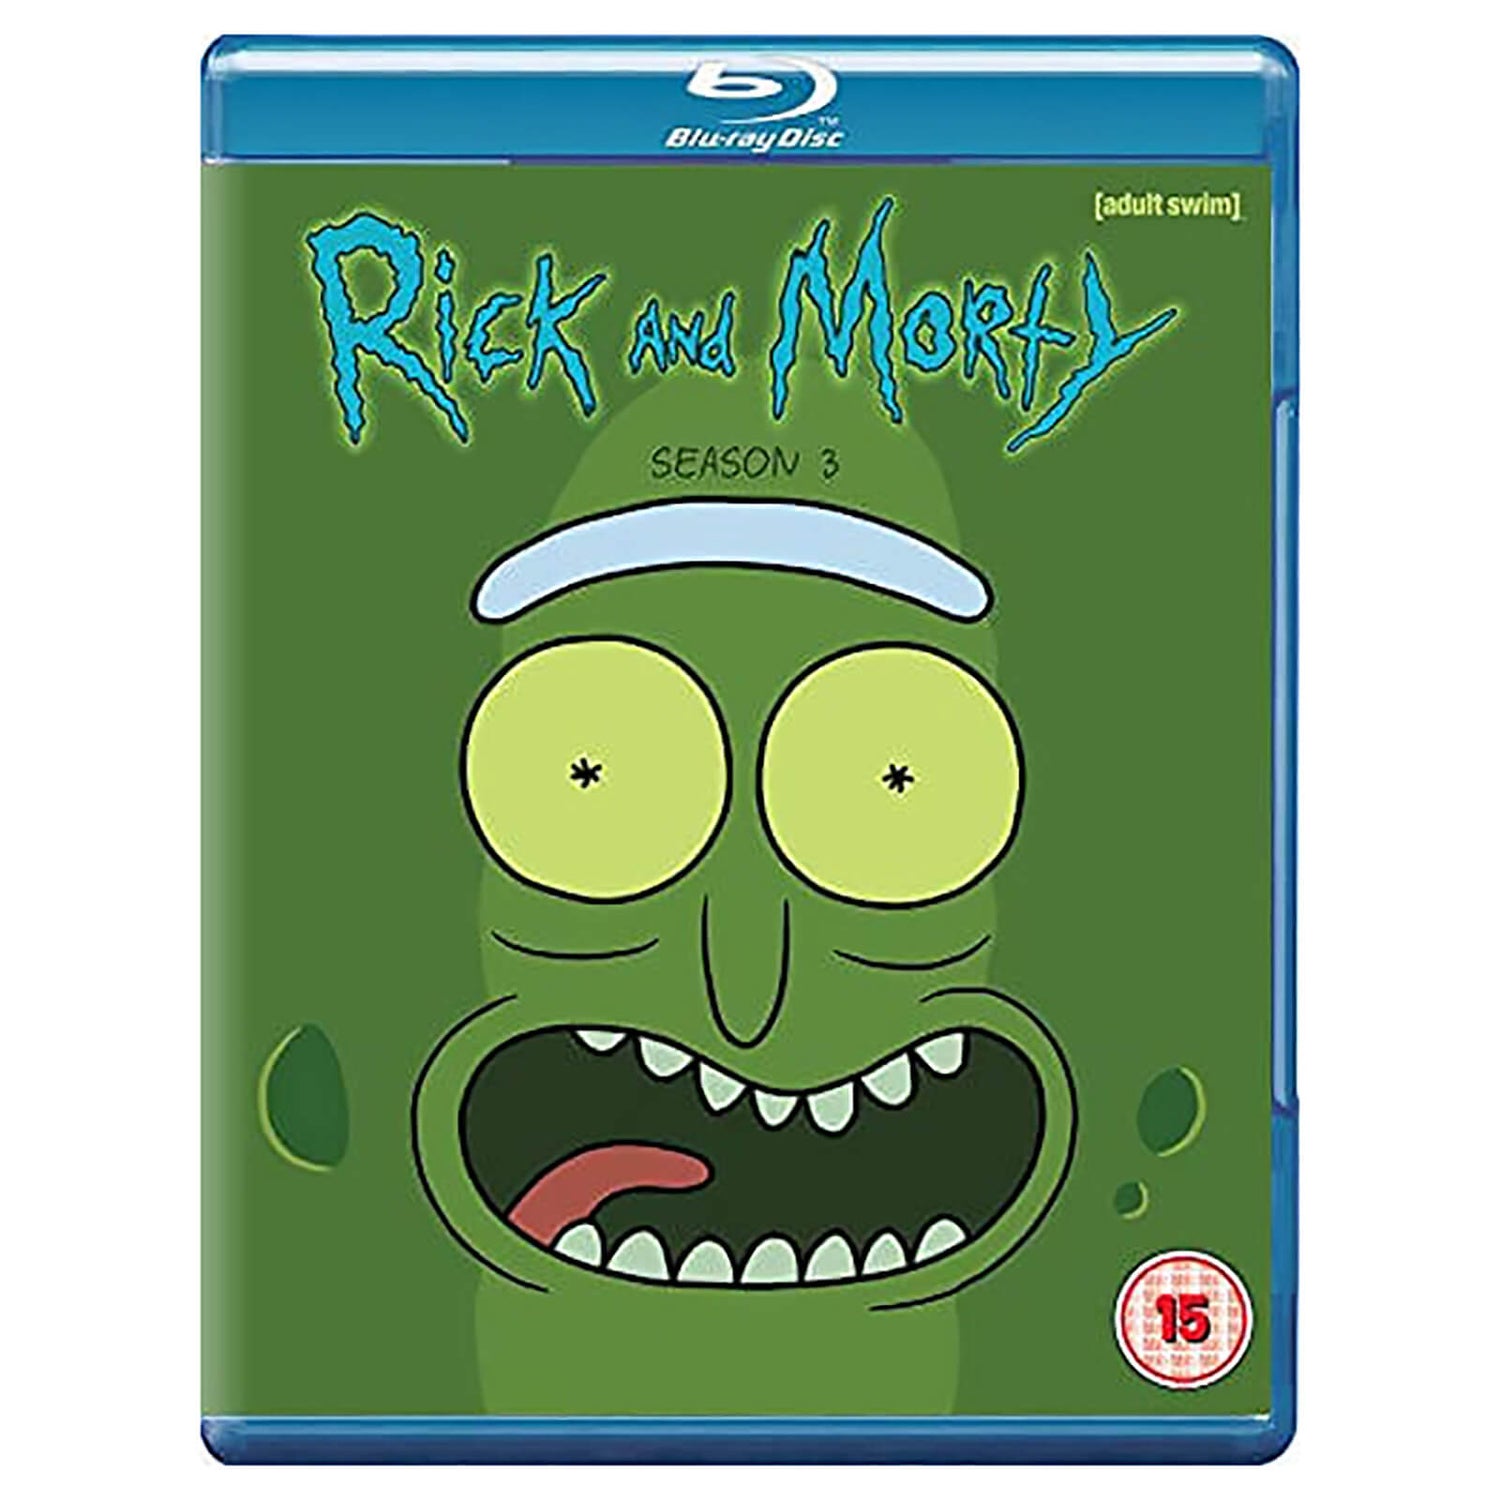 Rick & Morty Season 3